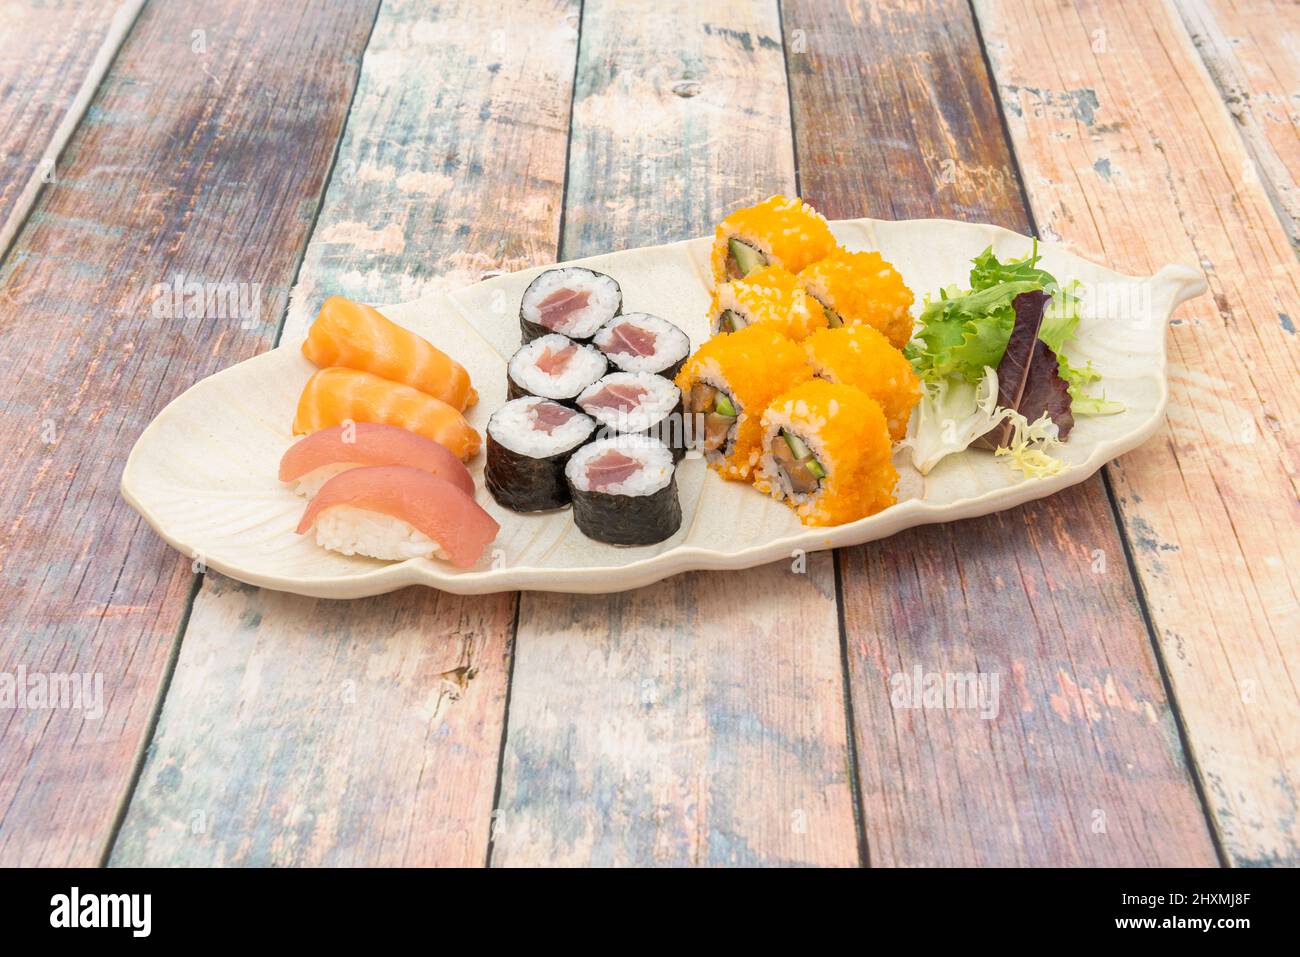 Assortiment de sushis, nigiri de thon rouge, saumon norvégien, maki de thon, rouleau de californie uramaki Banque D'Images